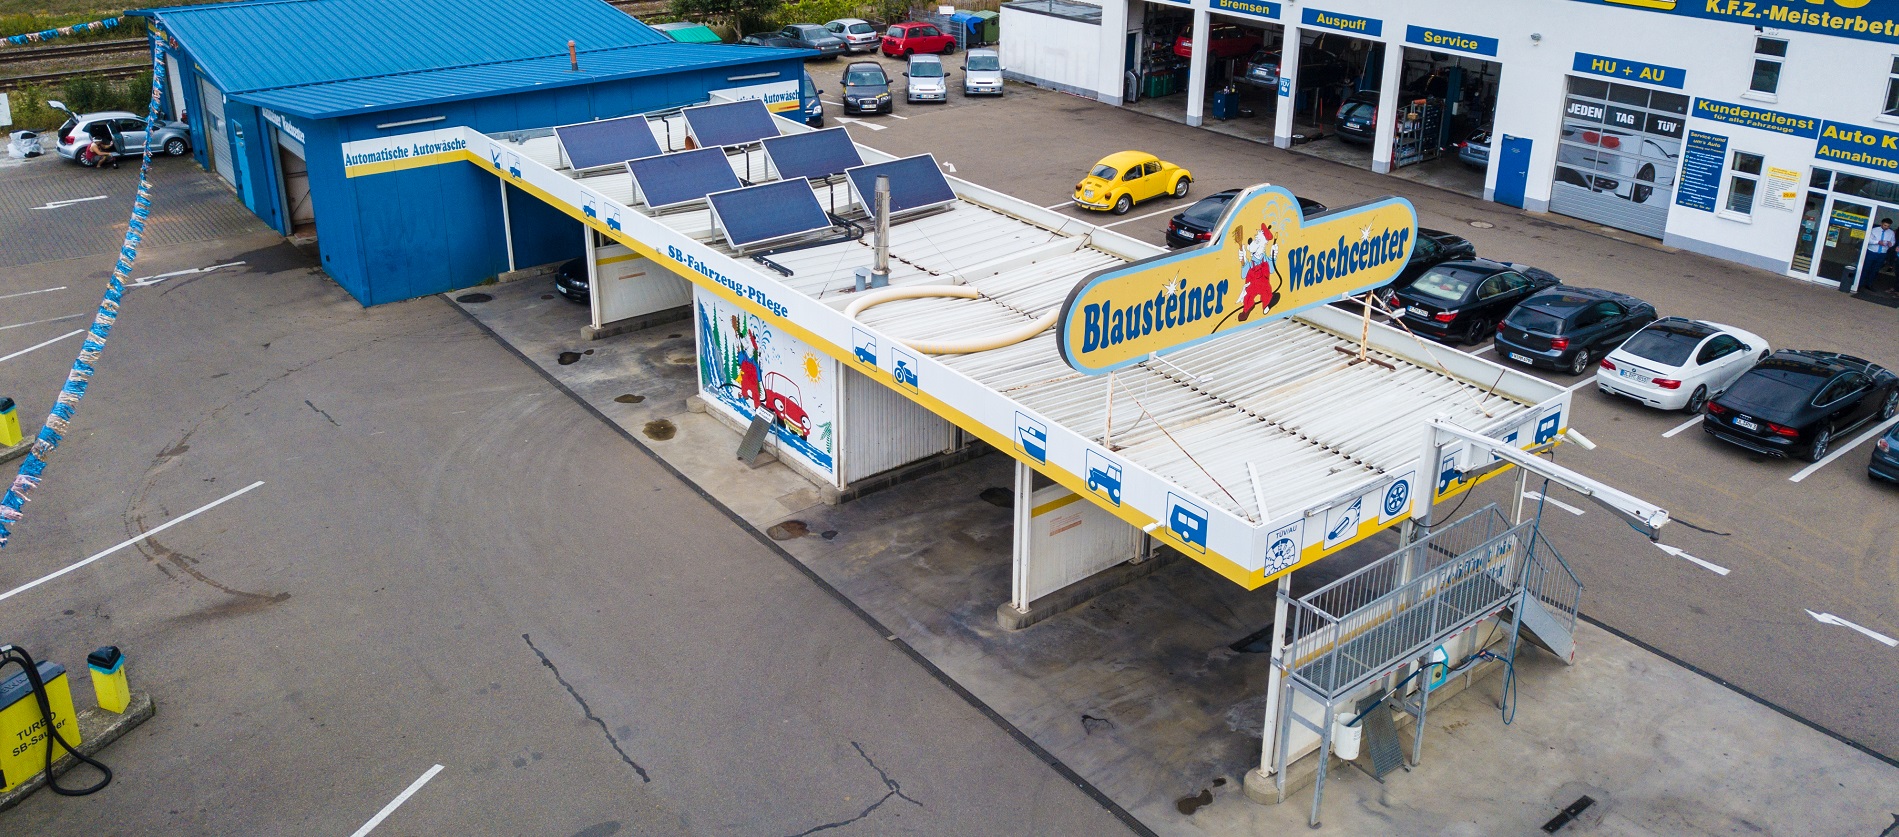 Blausteiner Waschcenter - Fahrzeugreinigung bei Ulm mit Auto Kili